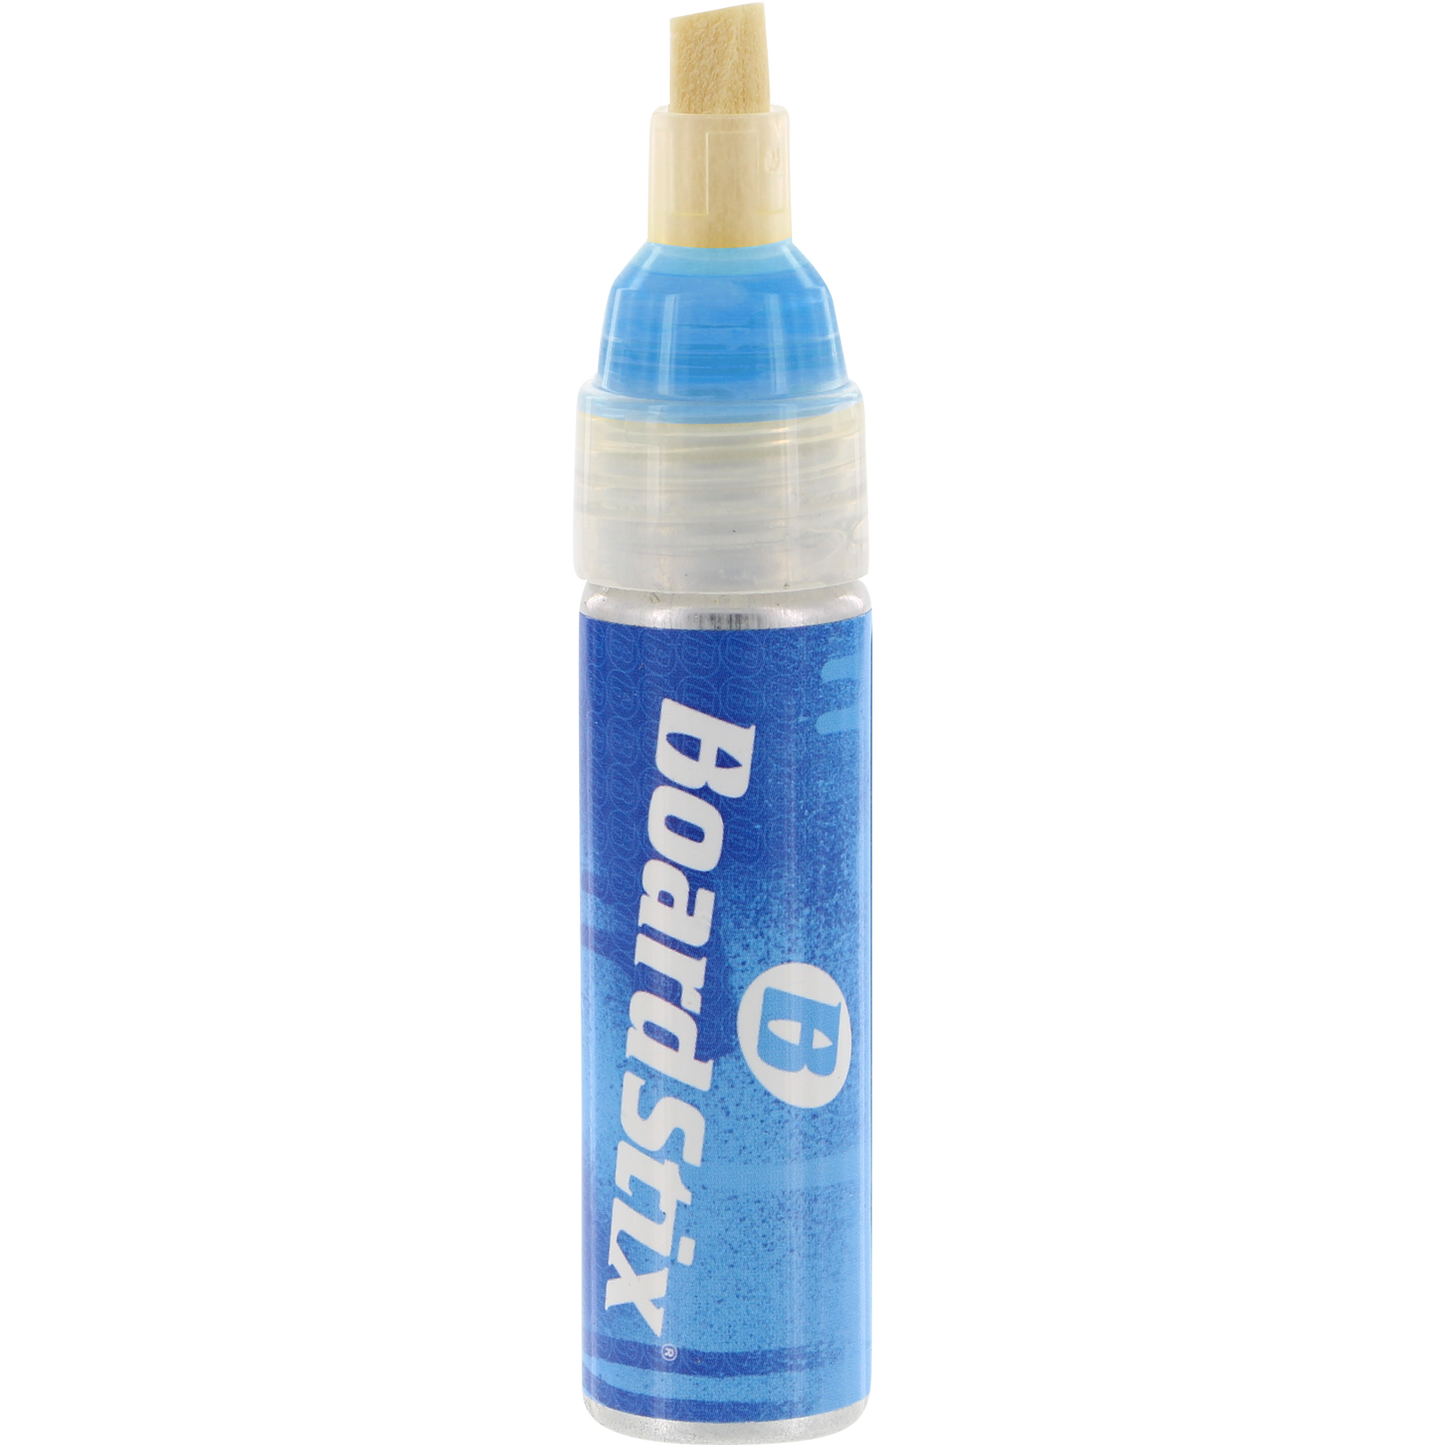 Boardstix Premium Paint Pen Flourescent Blue